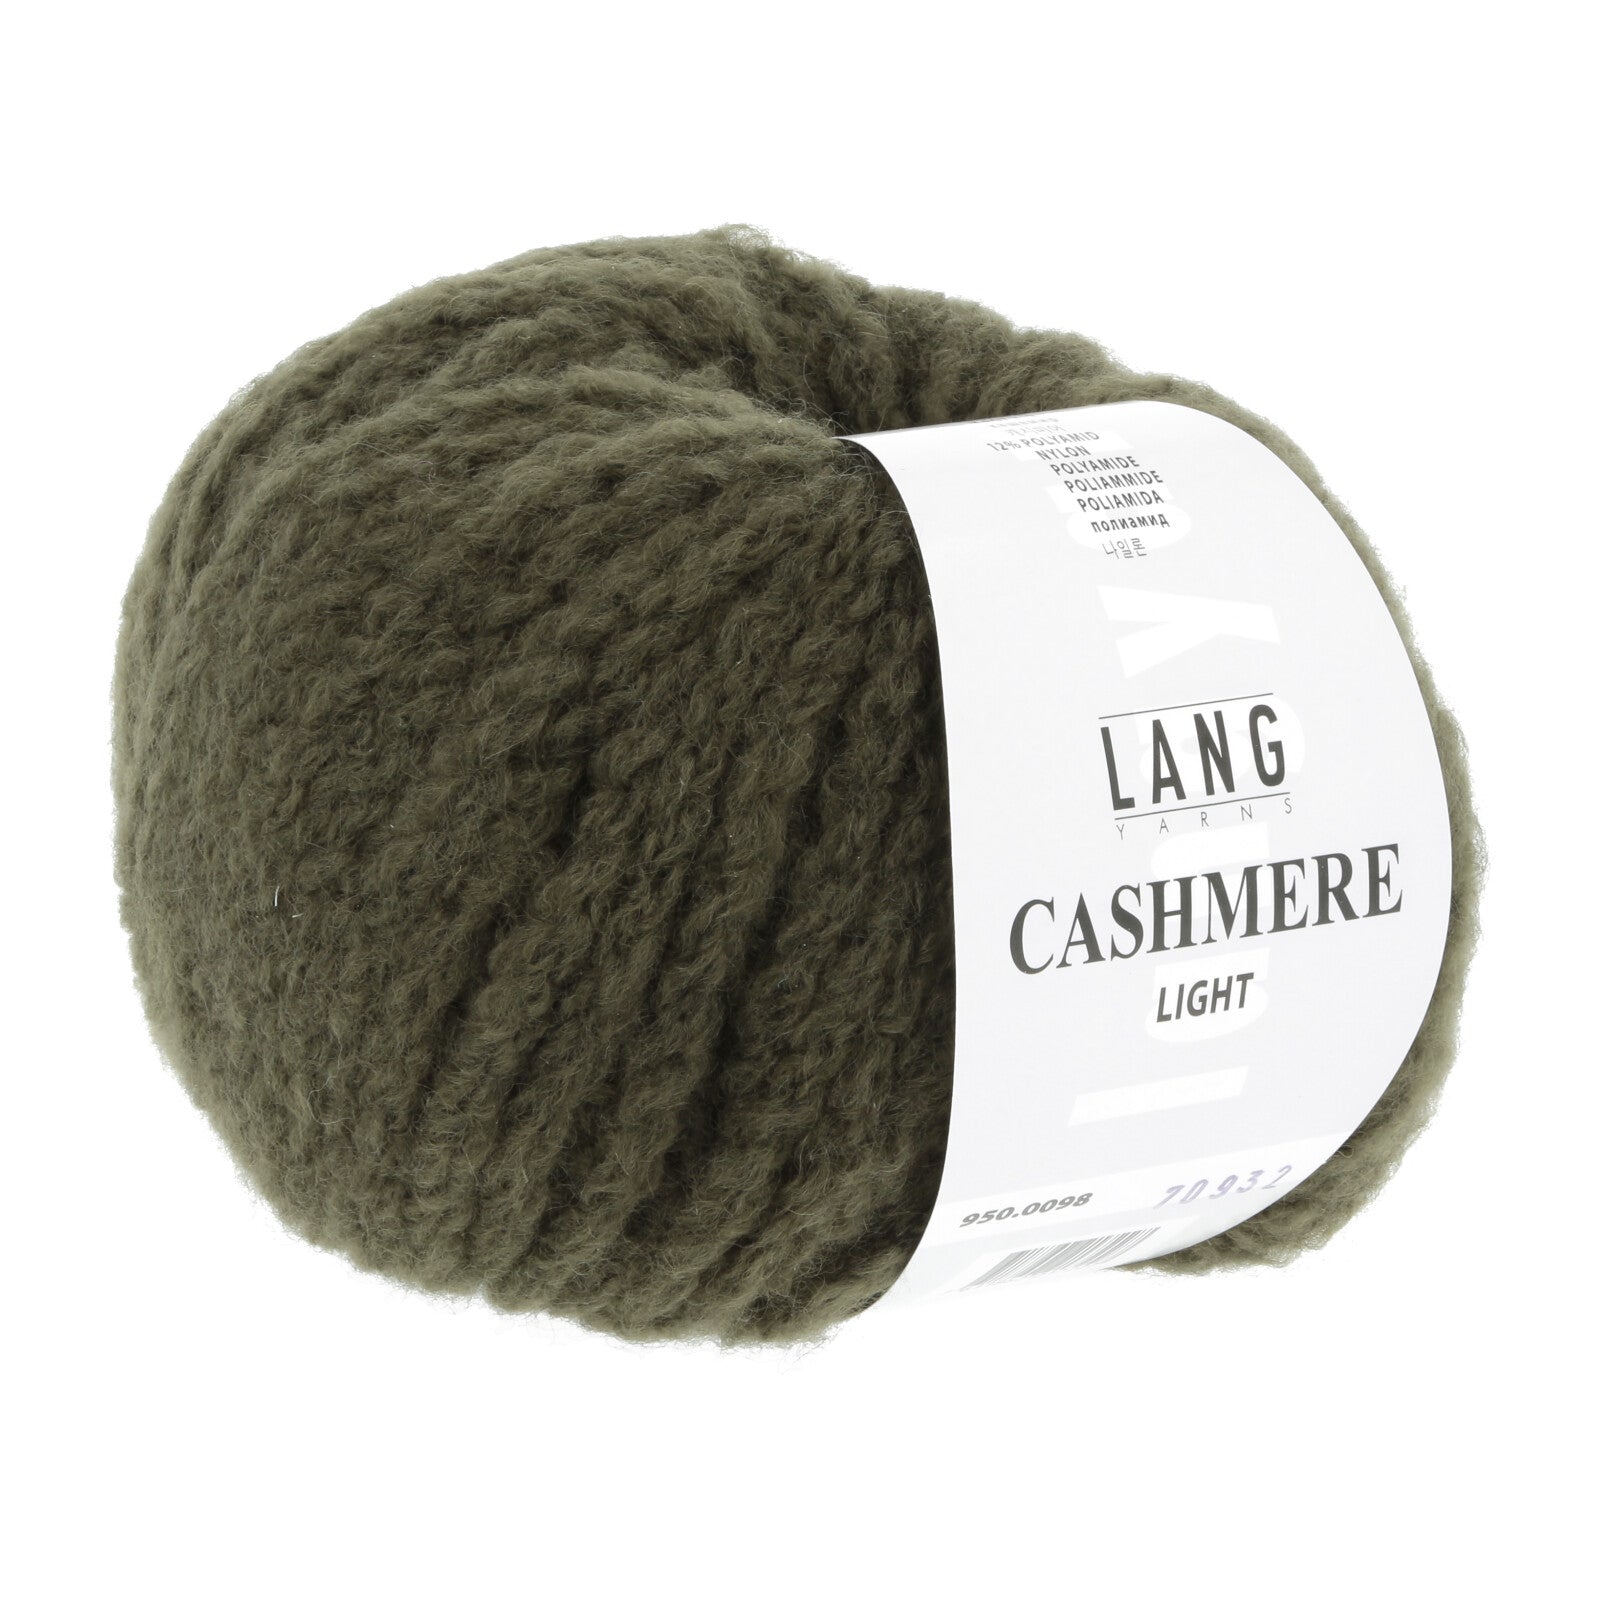 Cashmere Light Cap Kit